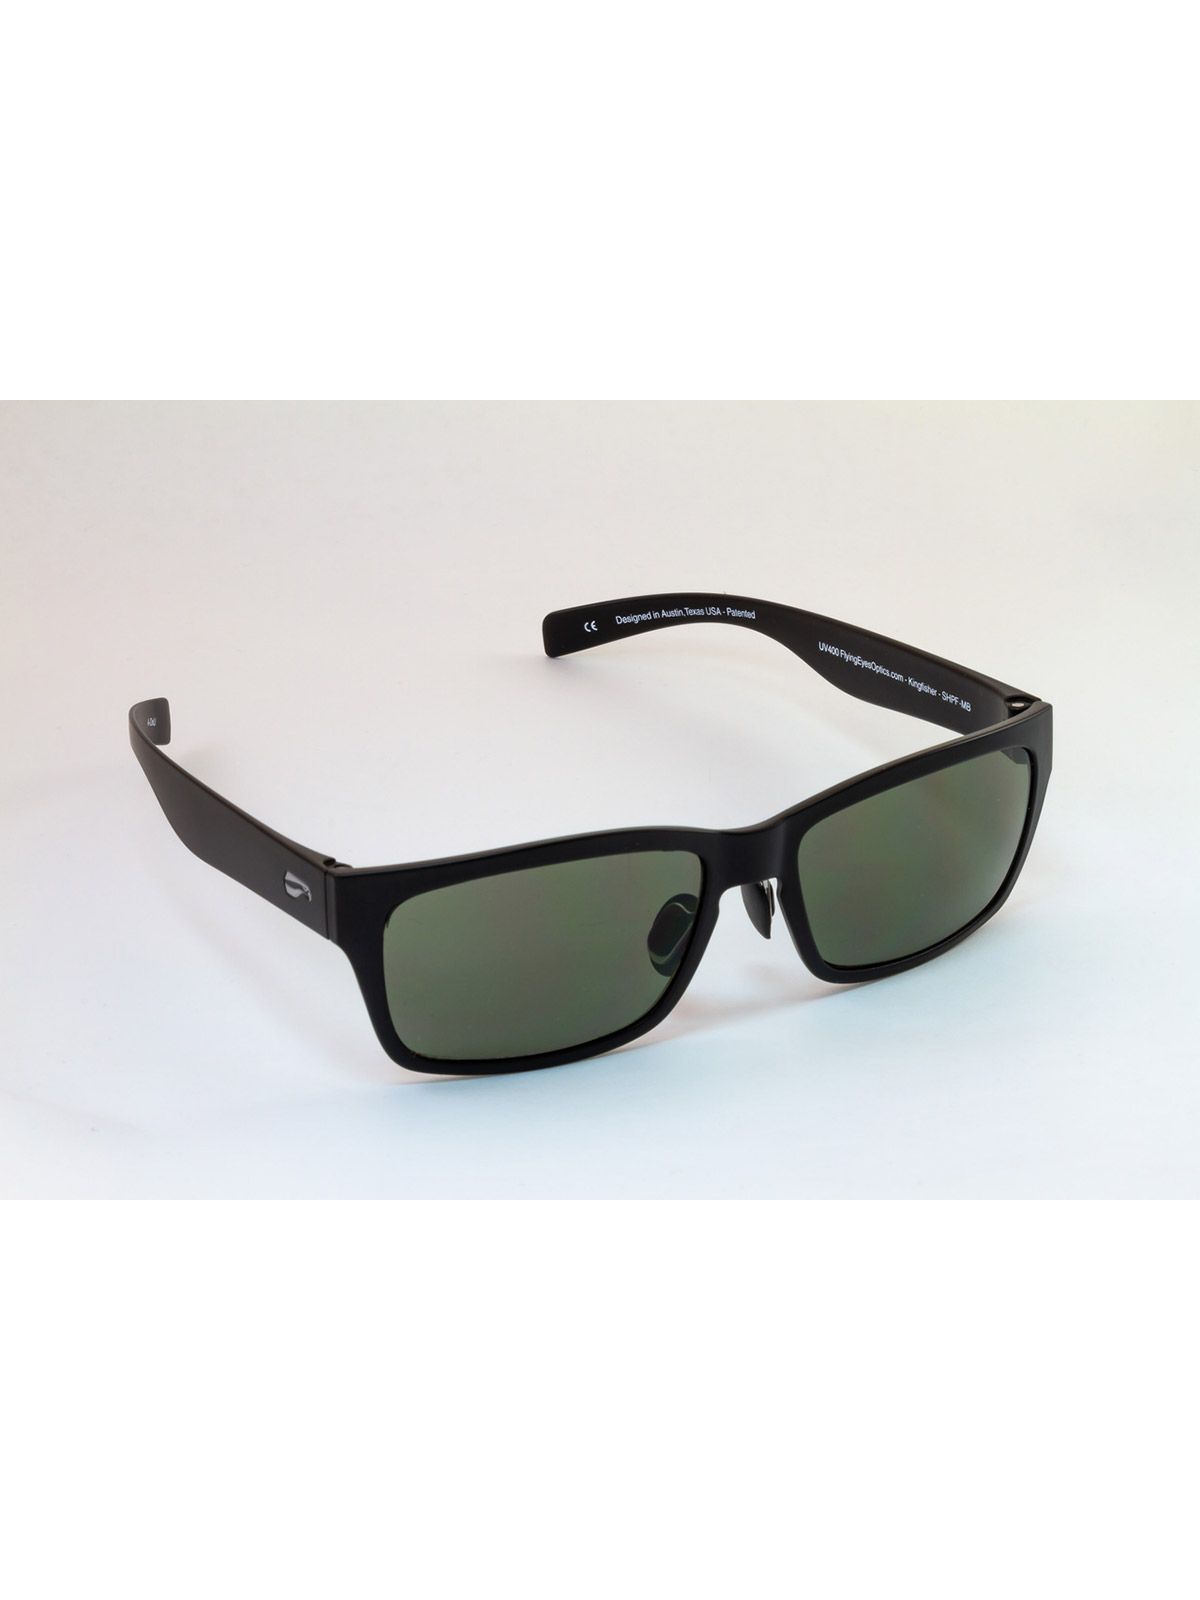 Flying Eyes Sunglasses Kingfisher - Matte Black Frame, G15 (Neutral Green) Lenses